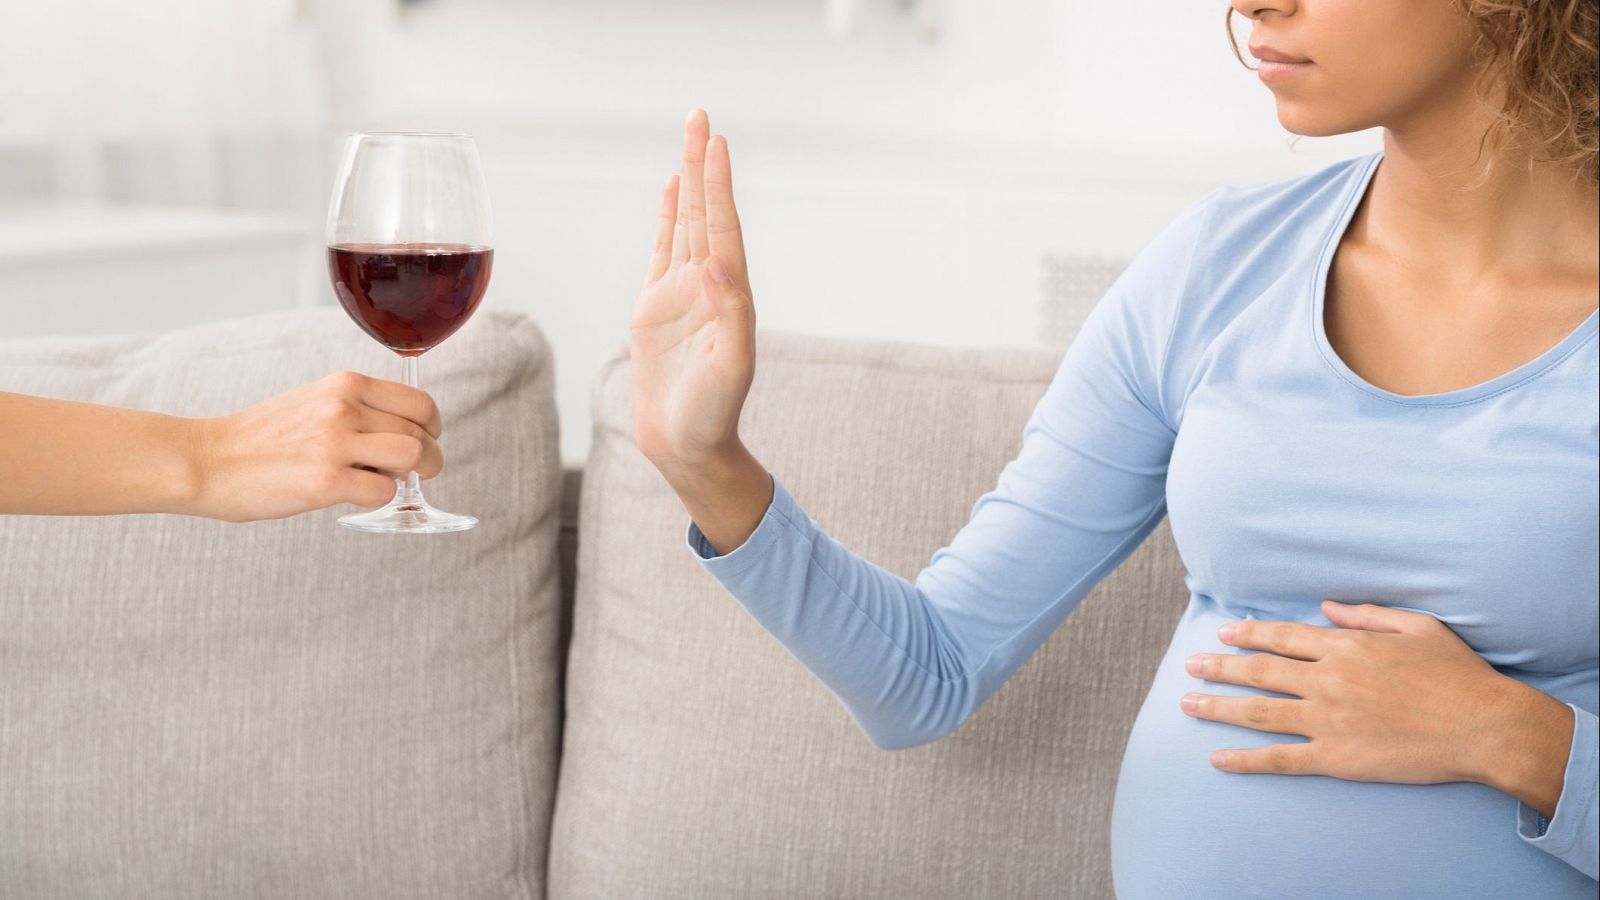 La síndrome d'alcoholisme fetal. Què és? Quins efectes té? Quina és la situació a Espanya?